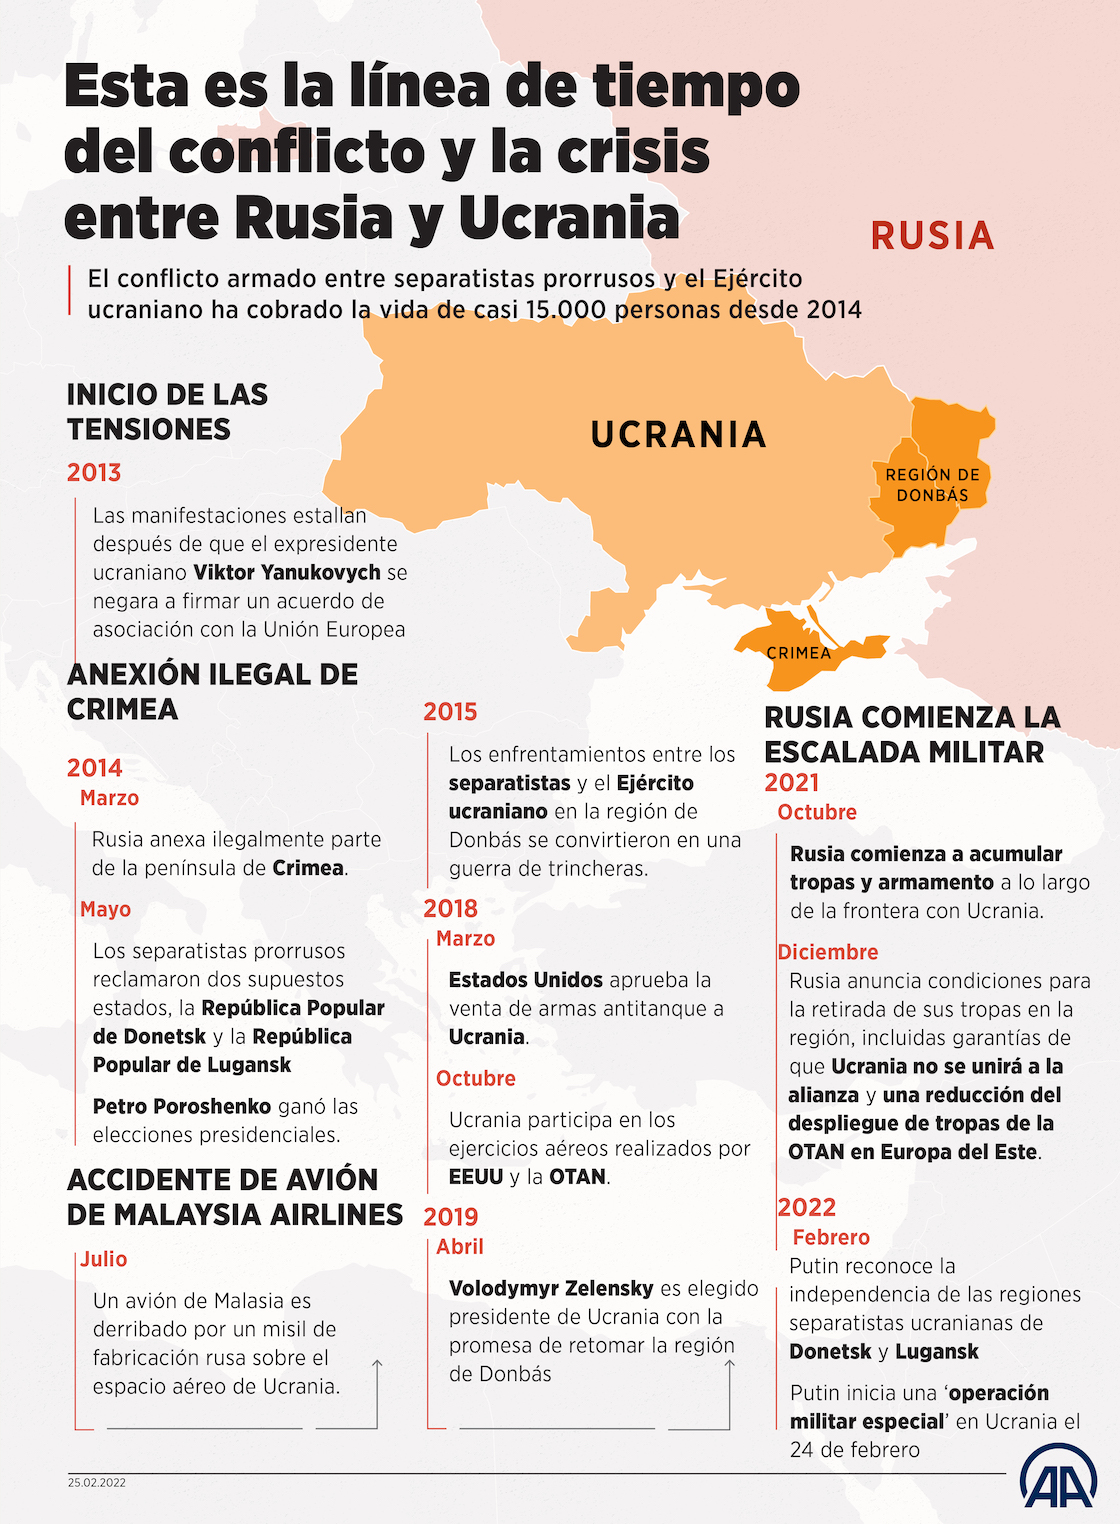 Esta es la línea de tiempo del conflicto y la crisis entre Rusia y Ucrania